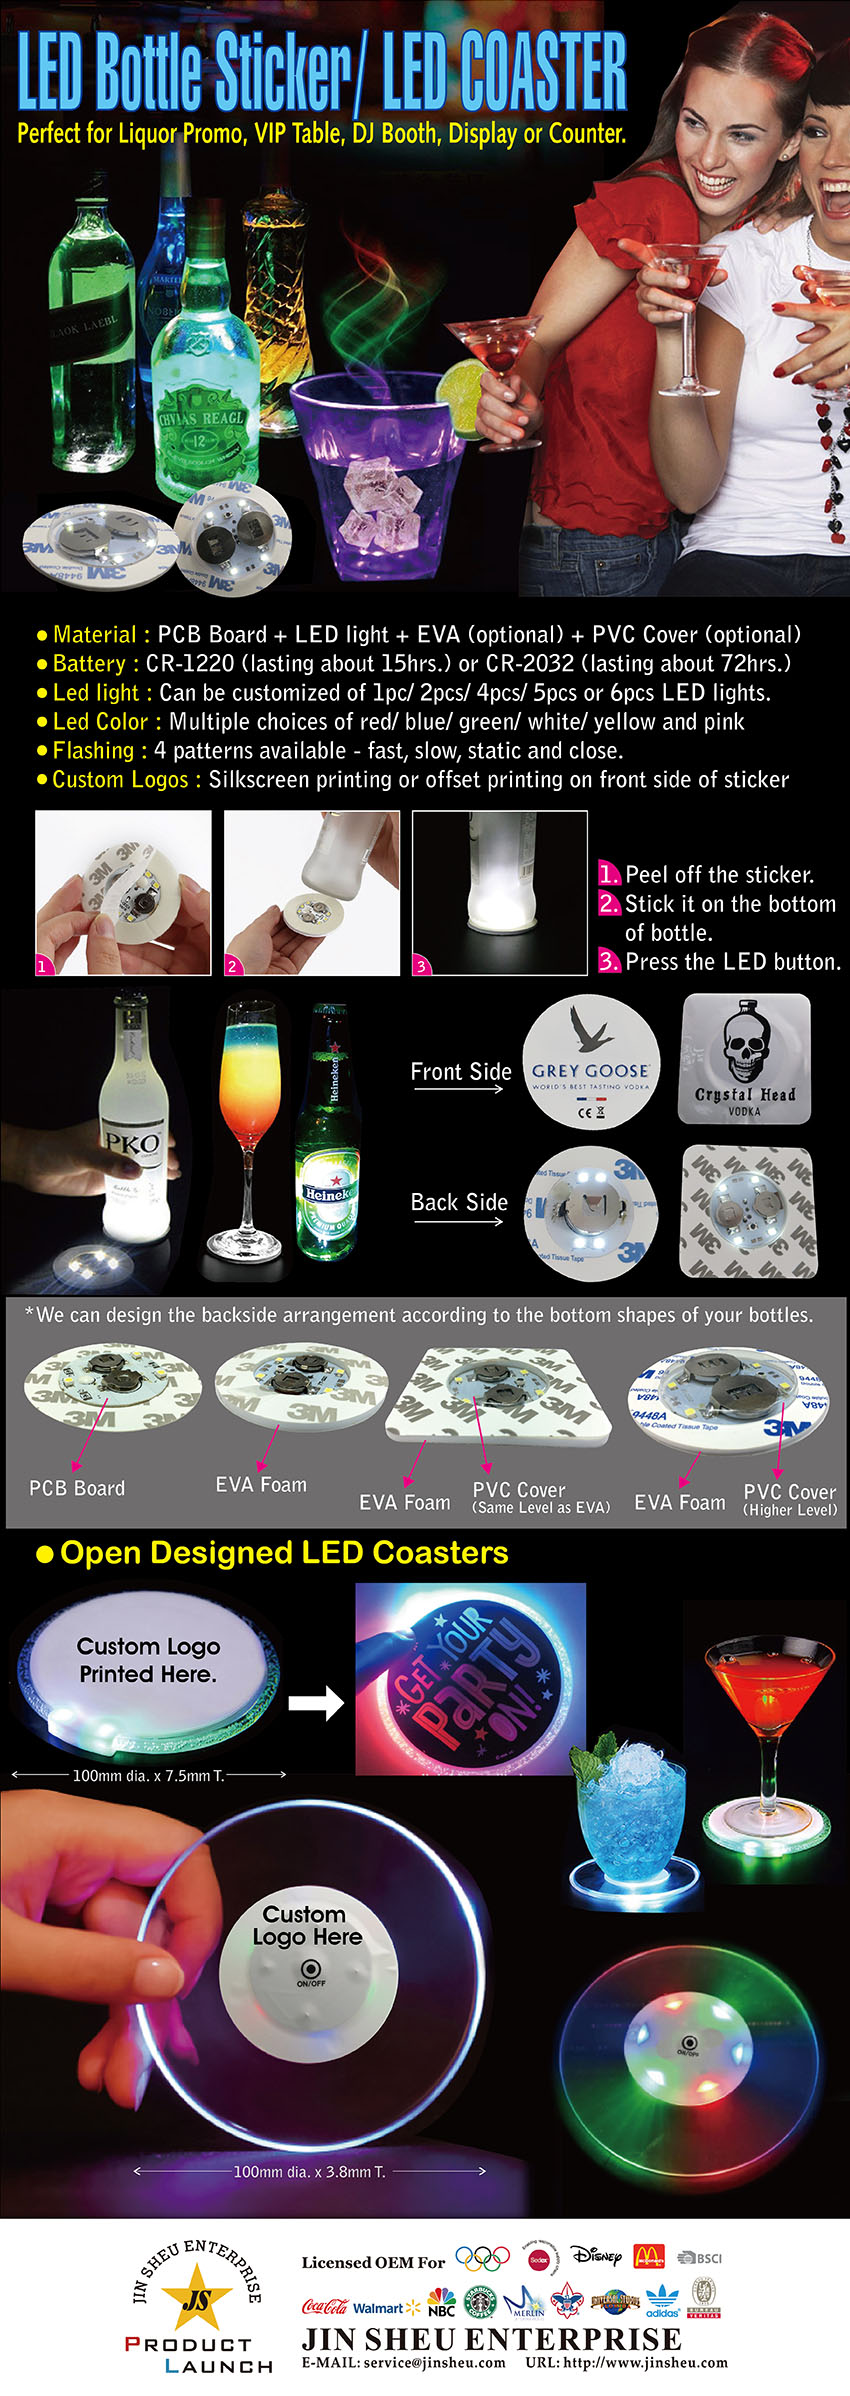 LED Bottle Sticker Coaster